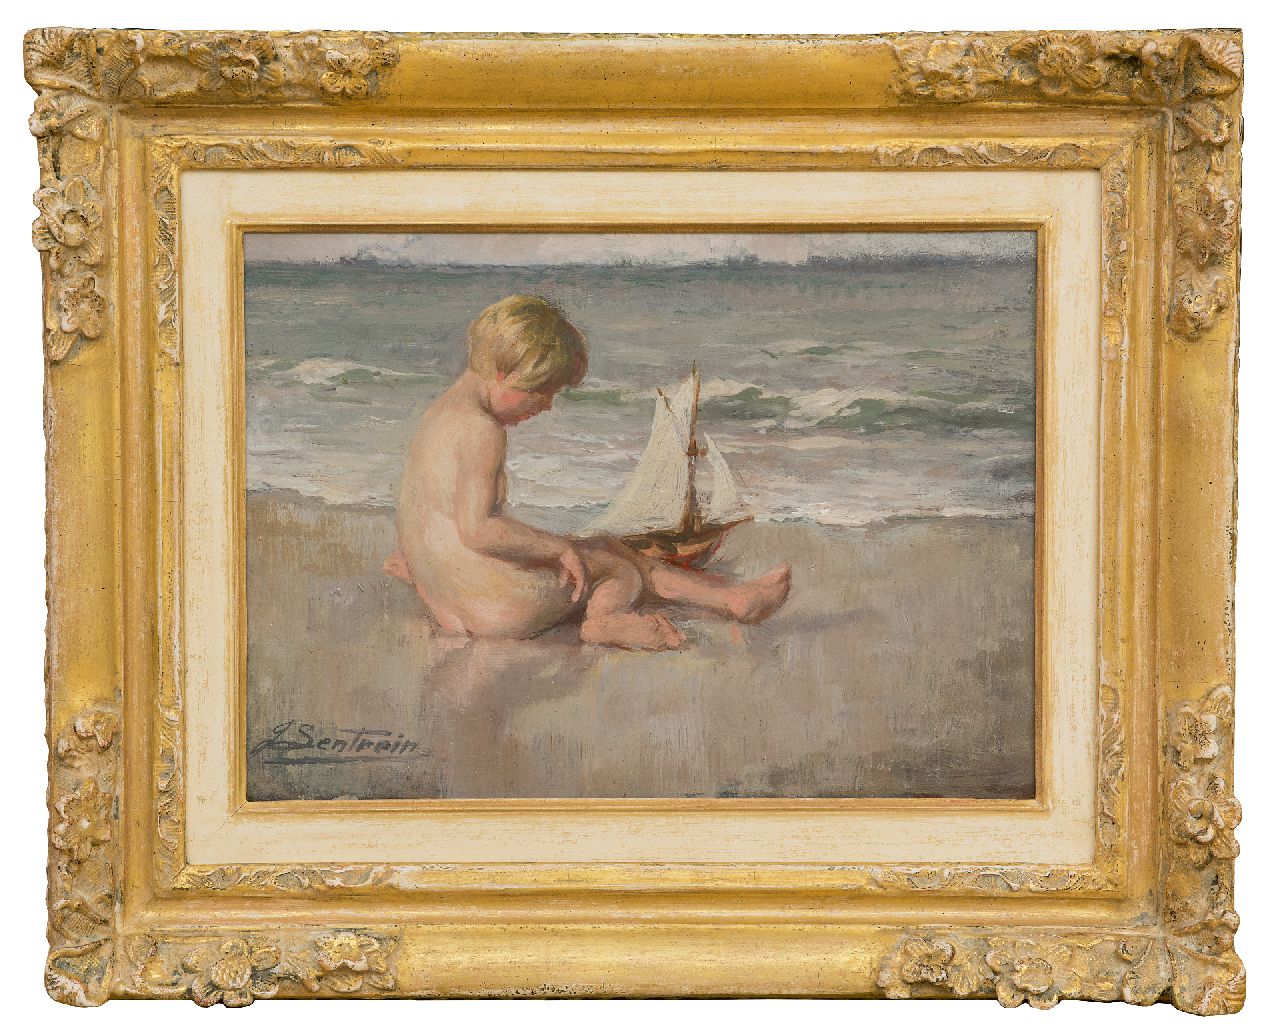 Lentrein J.  | Jules Lentrein | Schilderijen te koop aangeboden | Meisje, spelend op het strand, olieverf op paneel 25,0 x 35,0 cm, gesigneerd linksonder